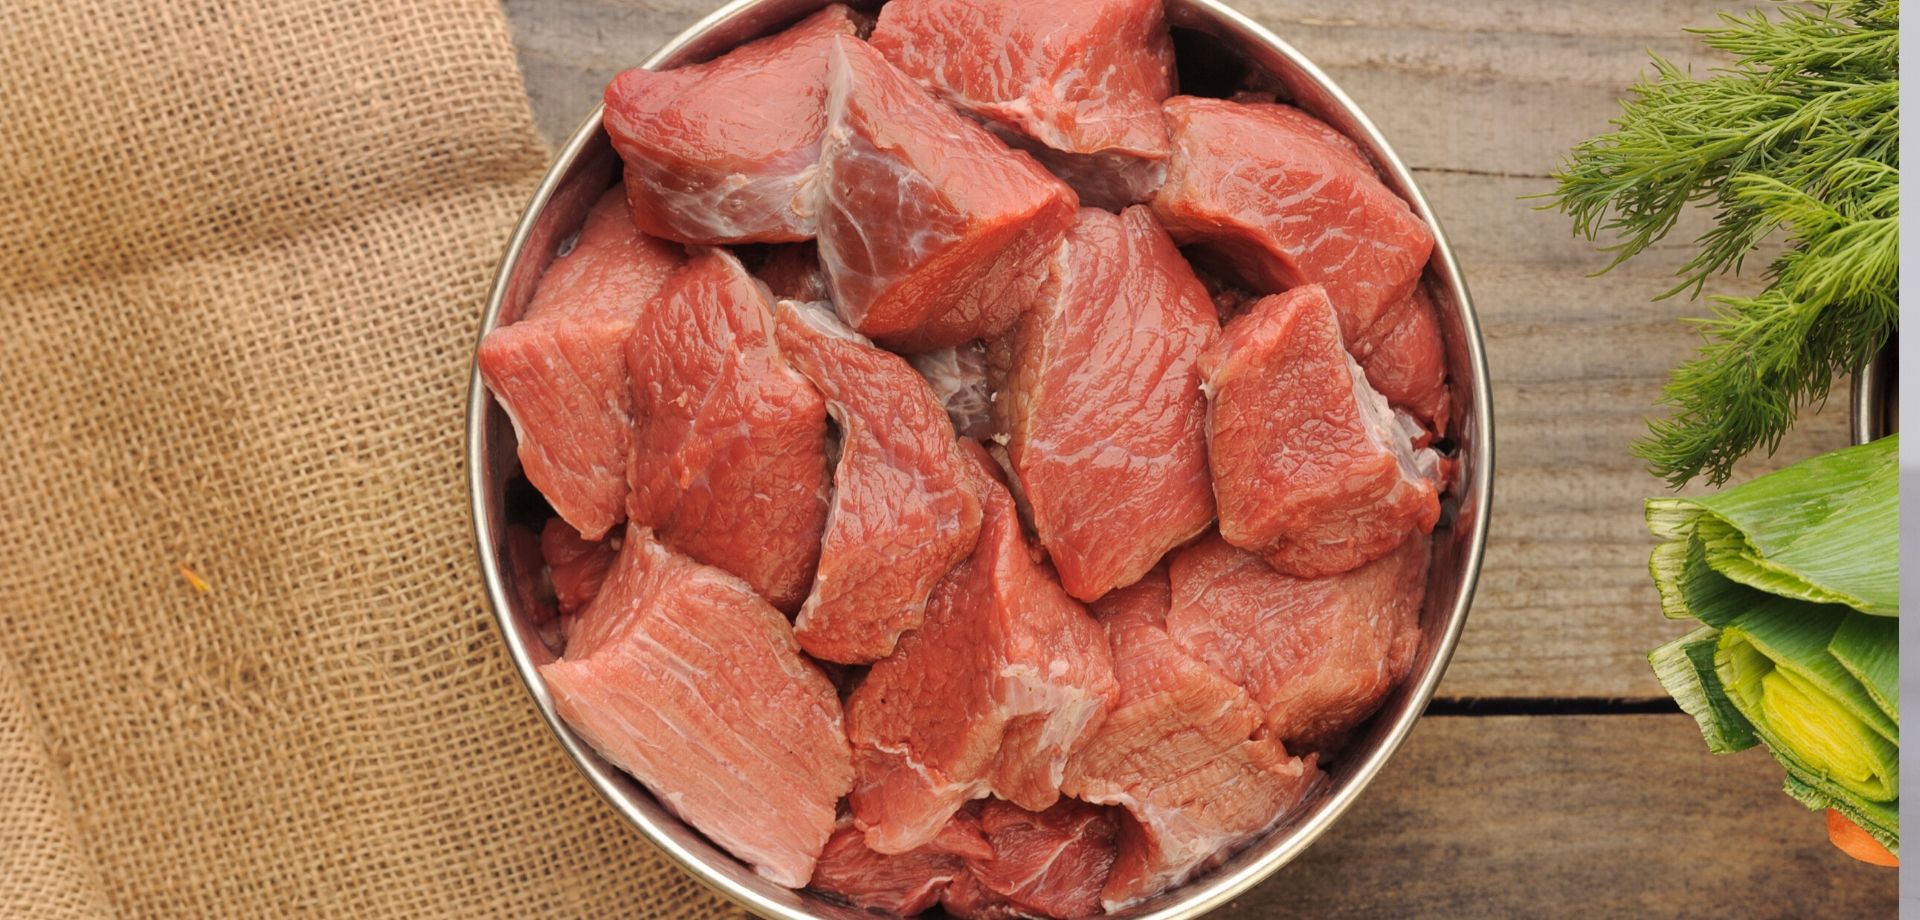 Beef Barf $10.50 per kg (min 2kg)